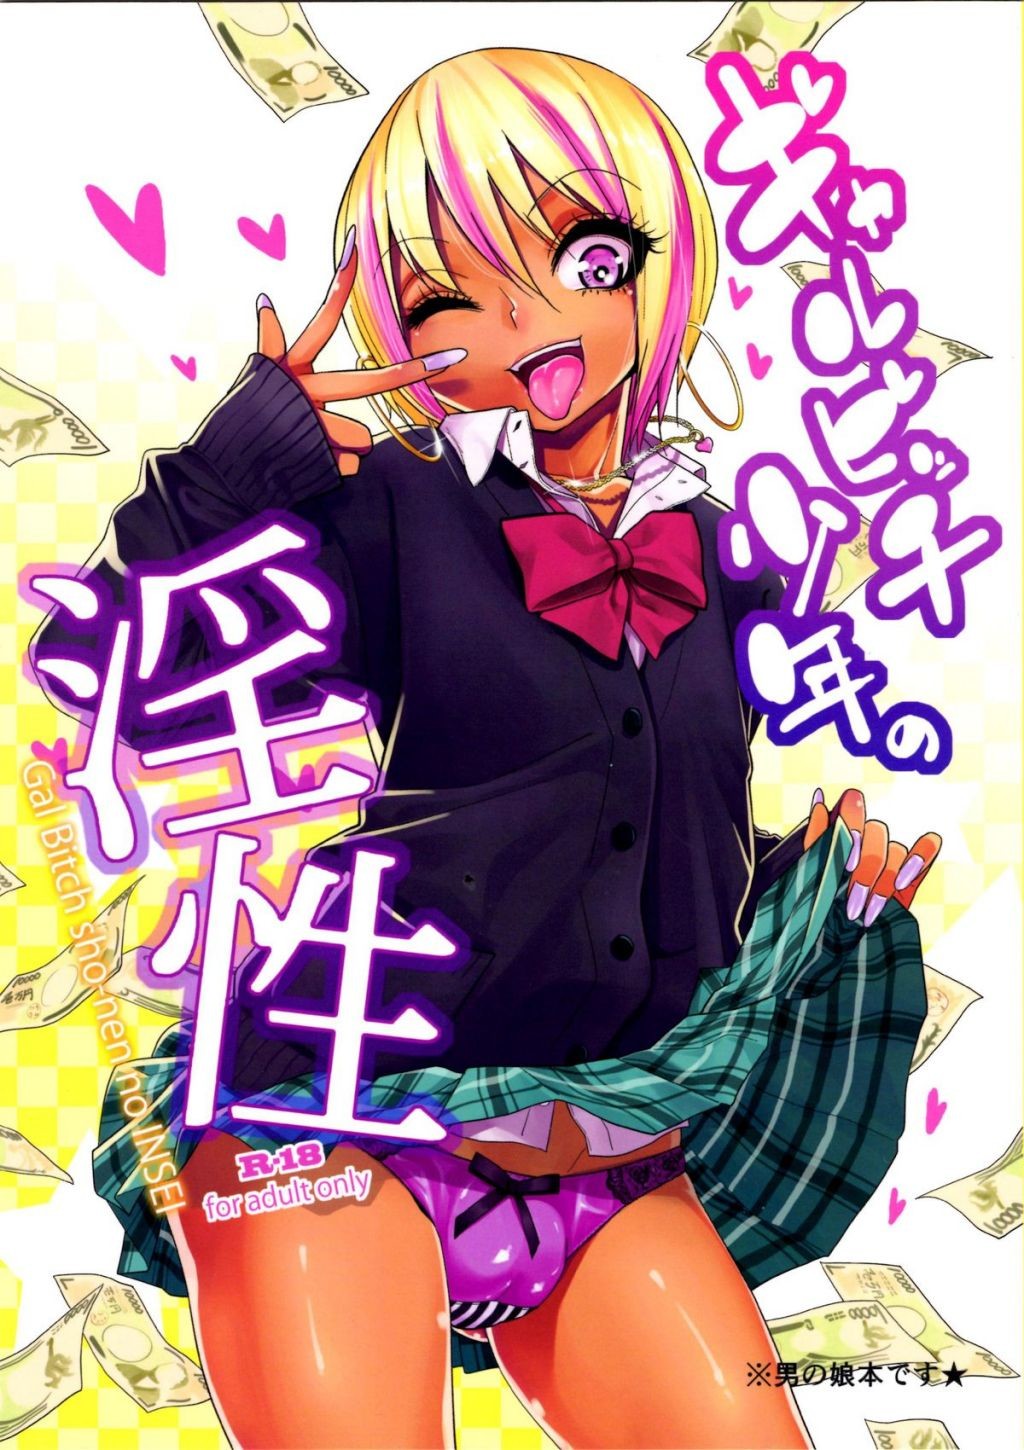 Femboy Hentai Manga